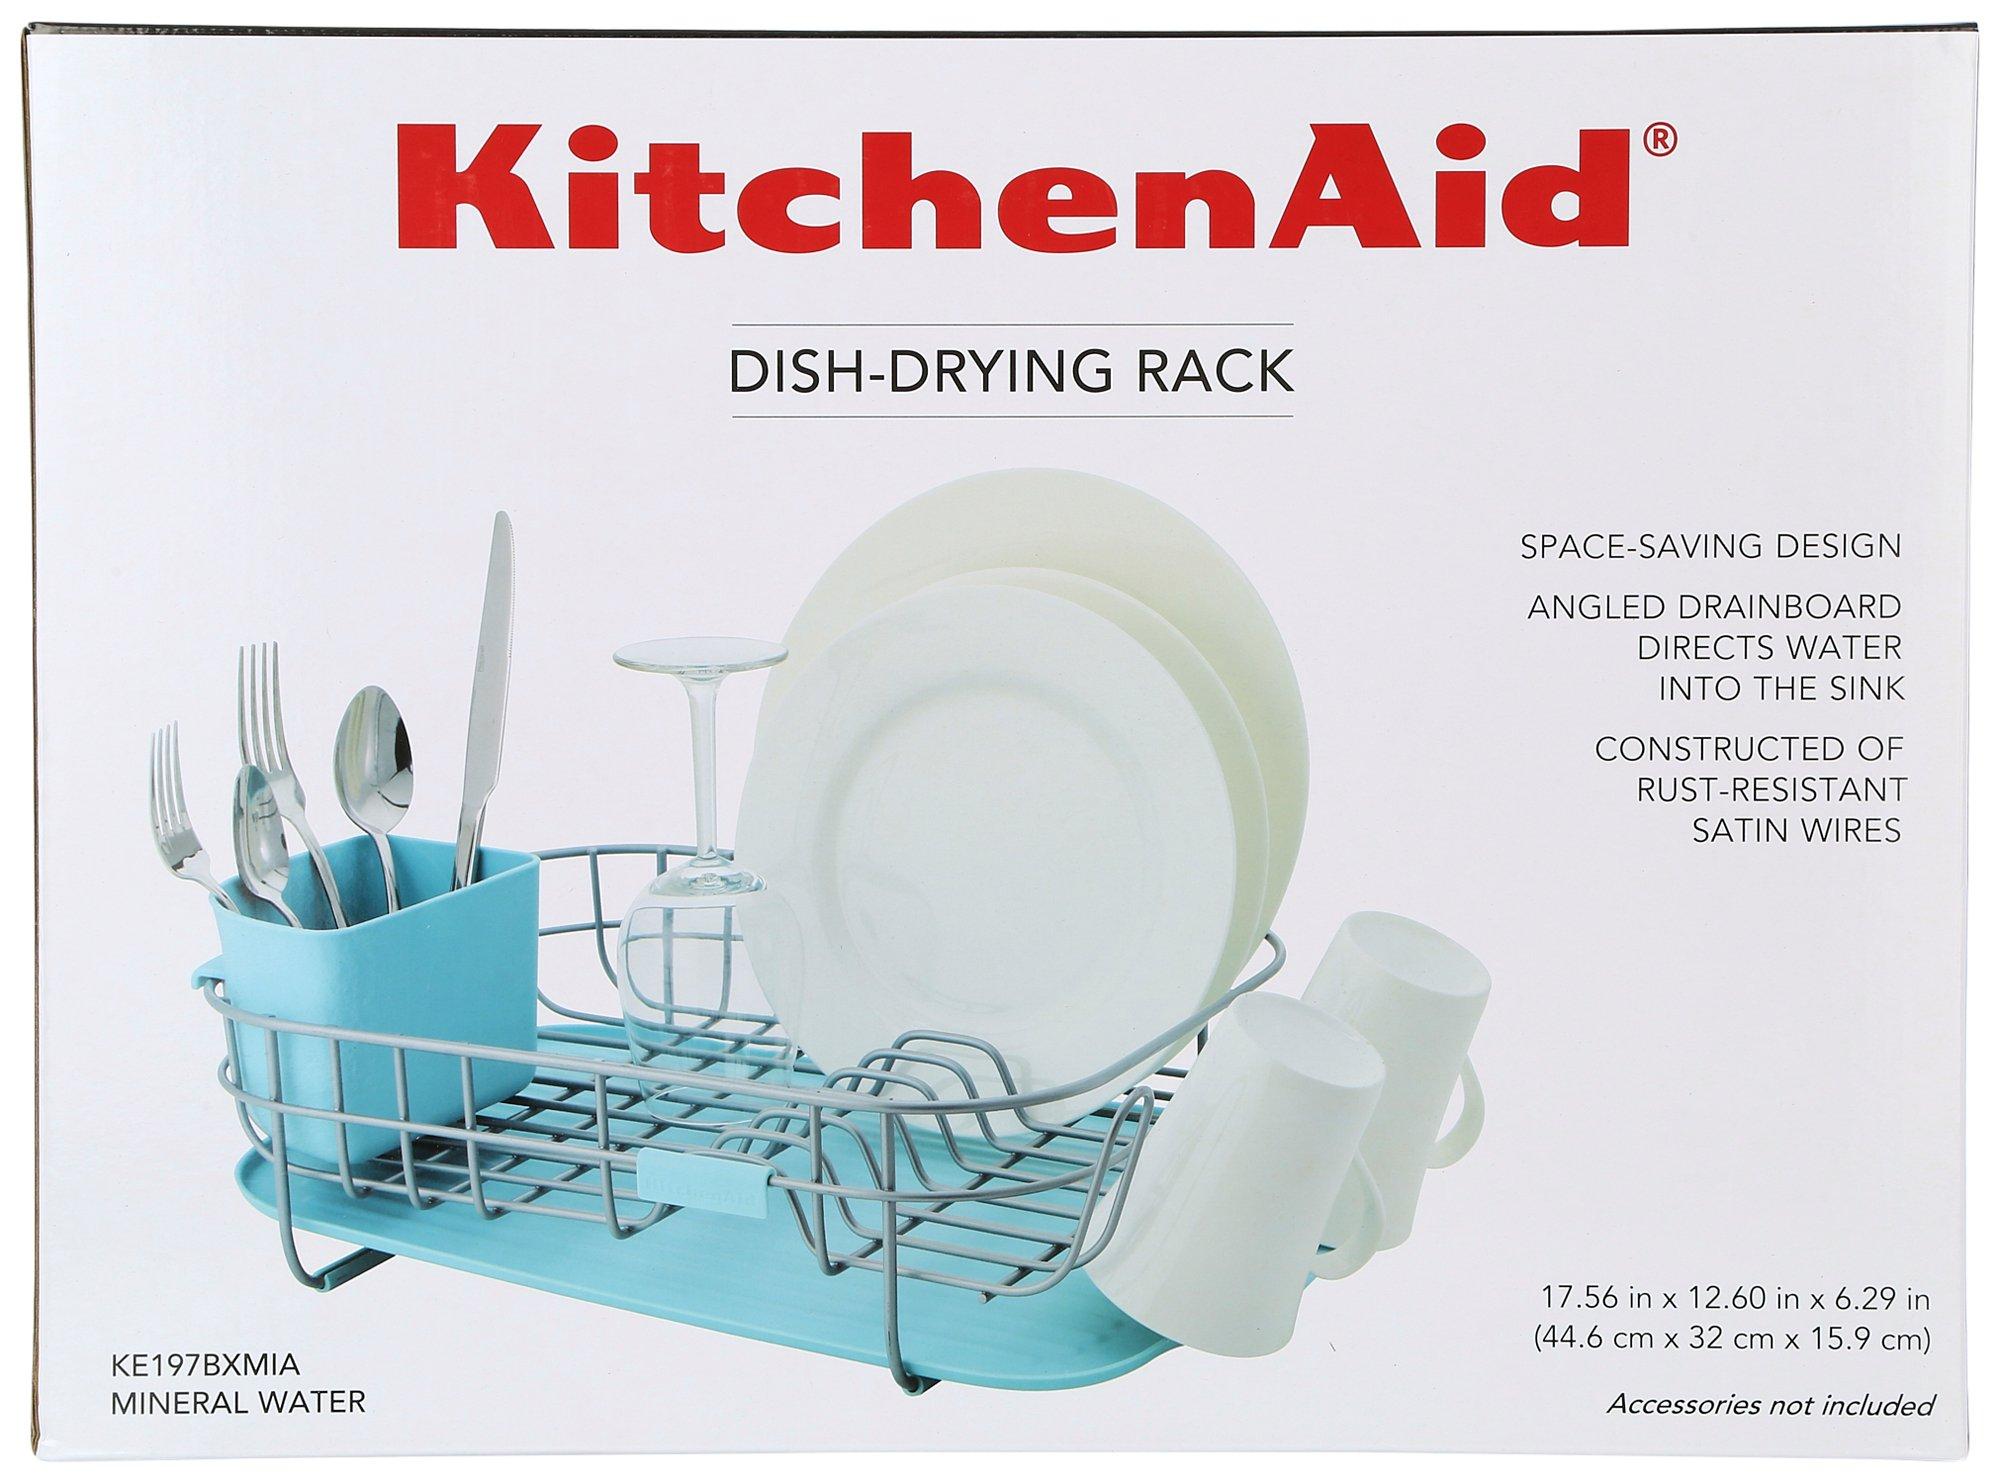 Dish-Drying Rack